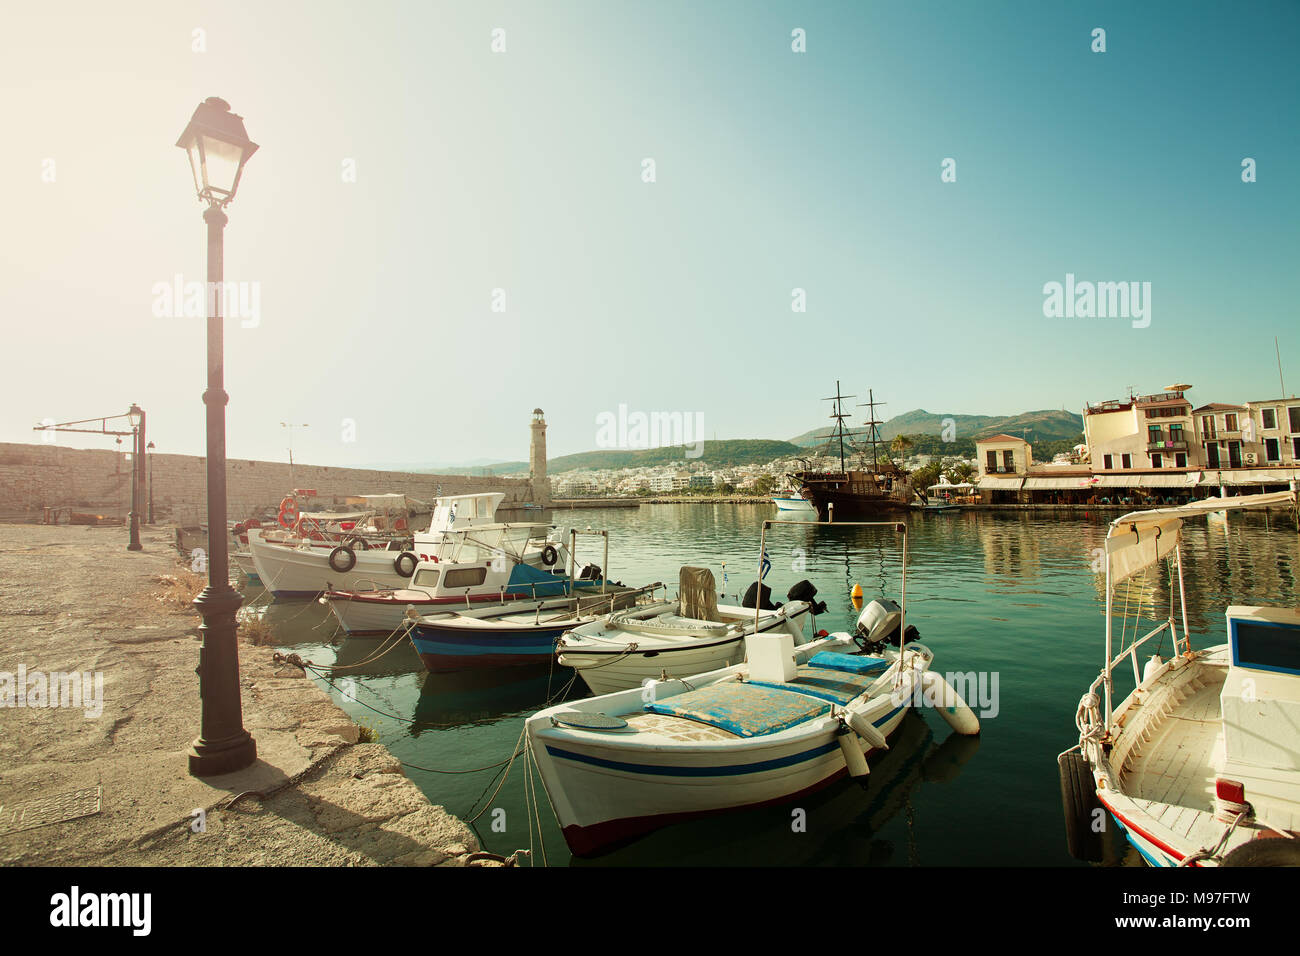 La città di Rethymnon, Creta, Grecia. Barche, del mare e del faro. Impressione di Grecia Foto Stock